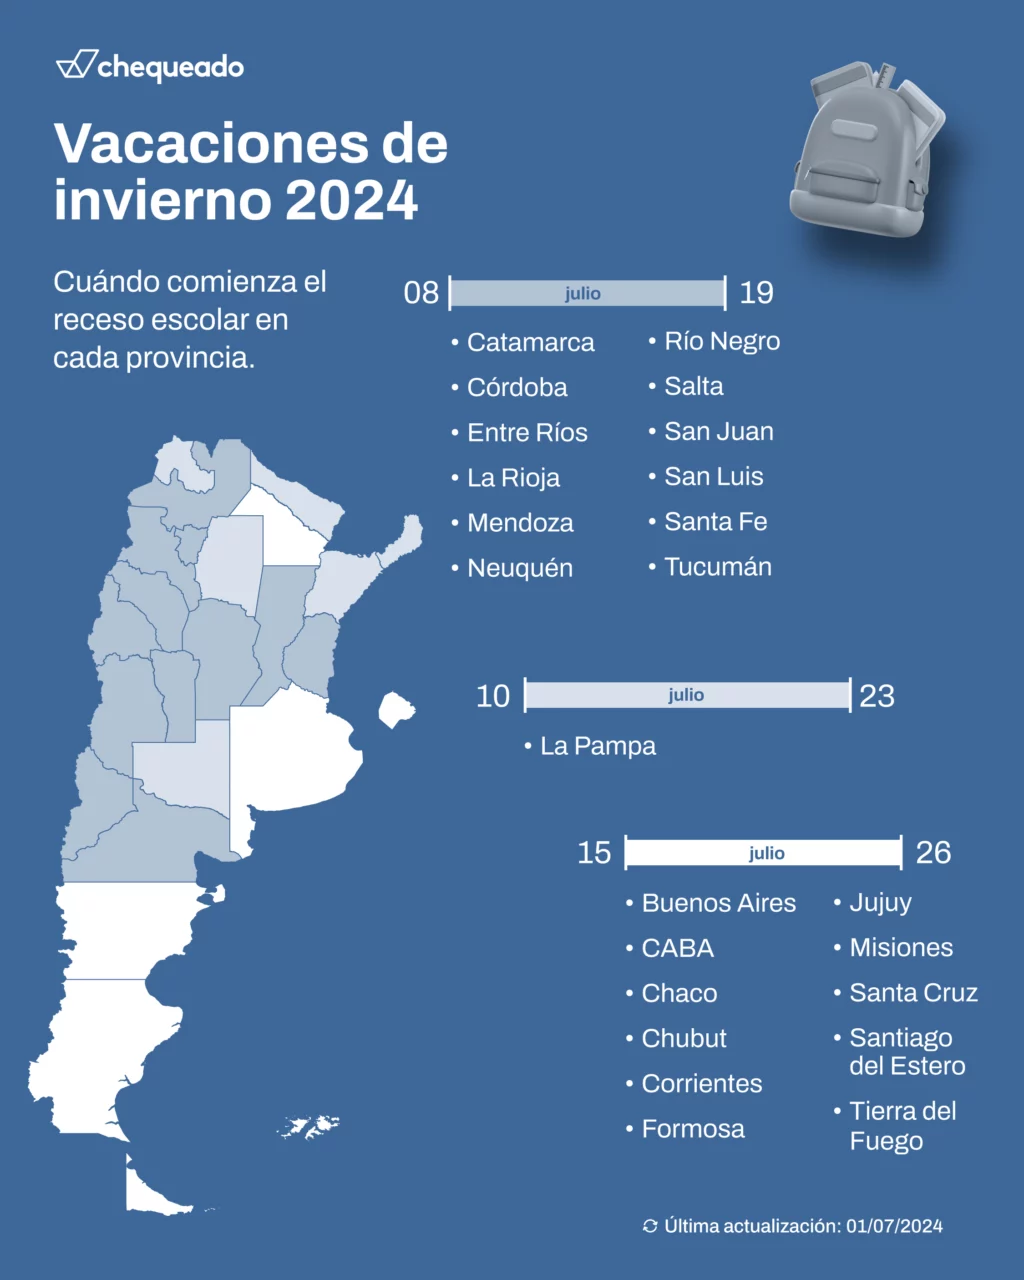 Vacaciones de invierno 2024: cuándo comienza el receso escolar en cada provincia de la Argentina